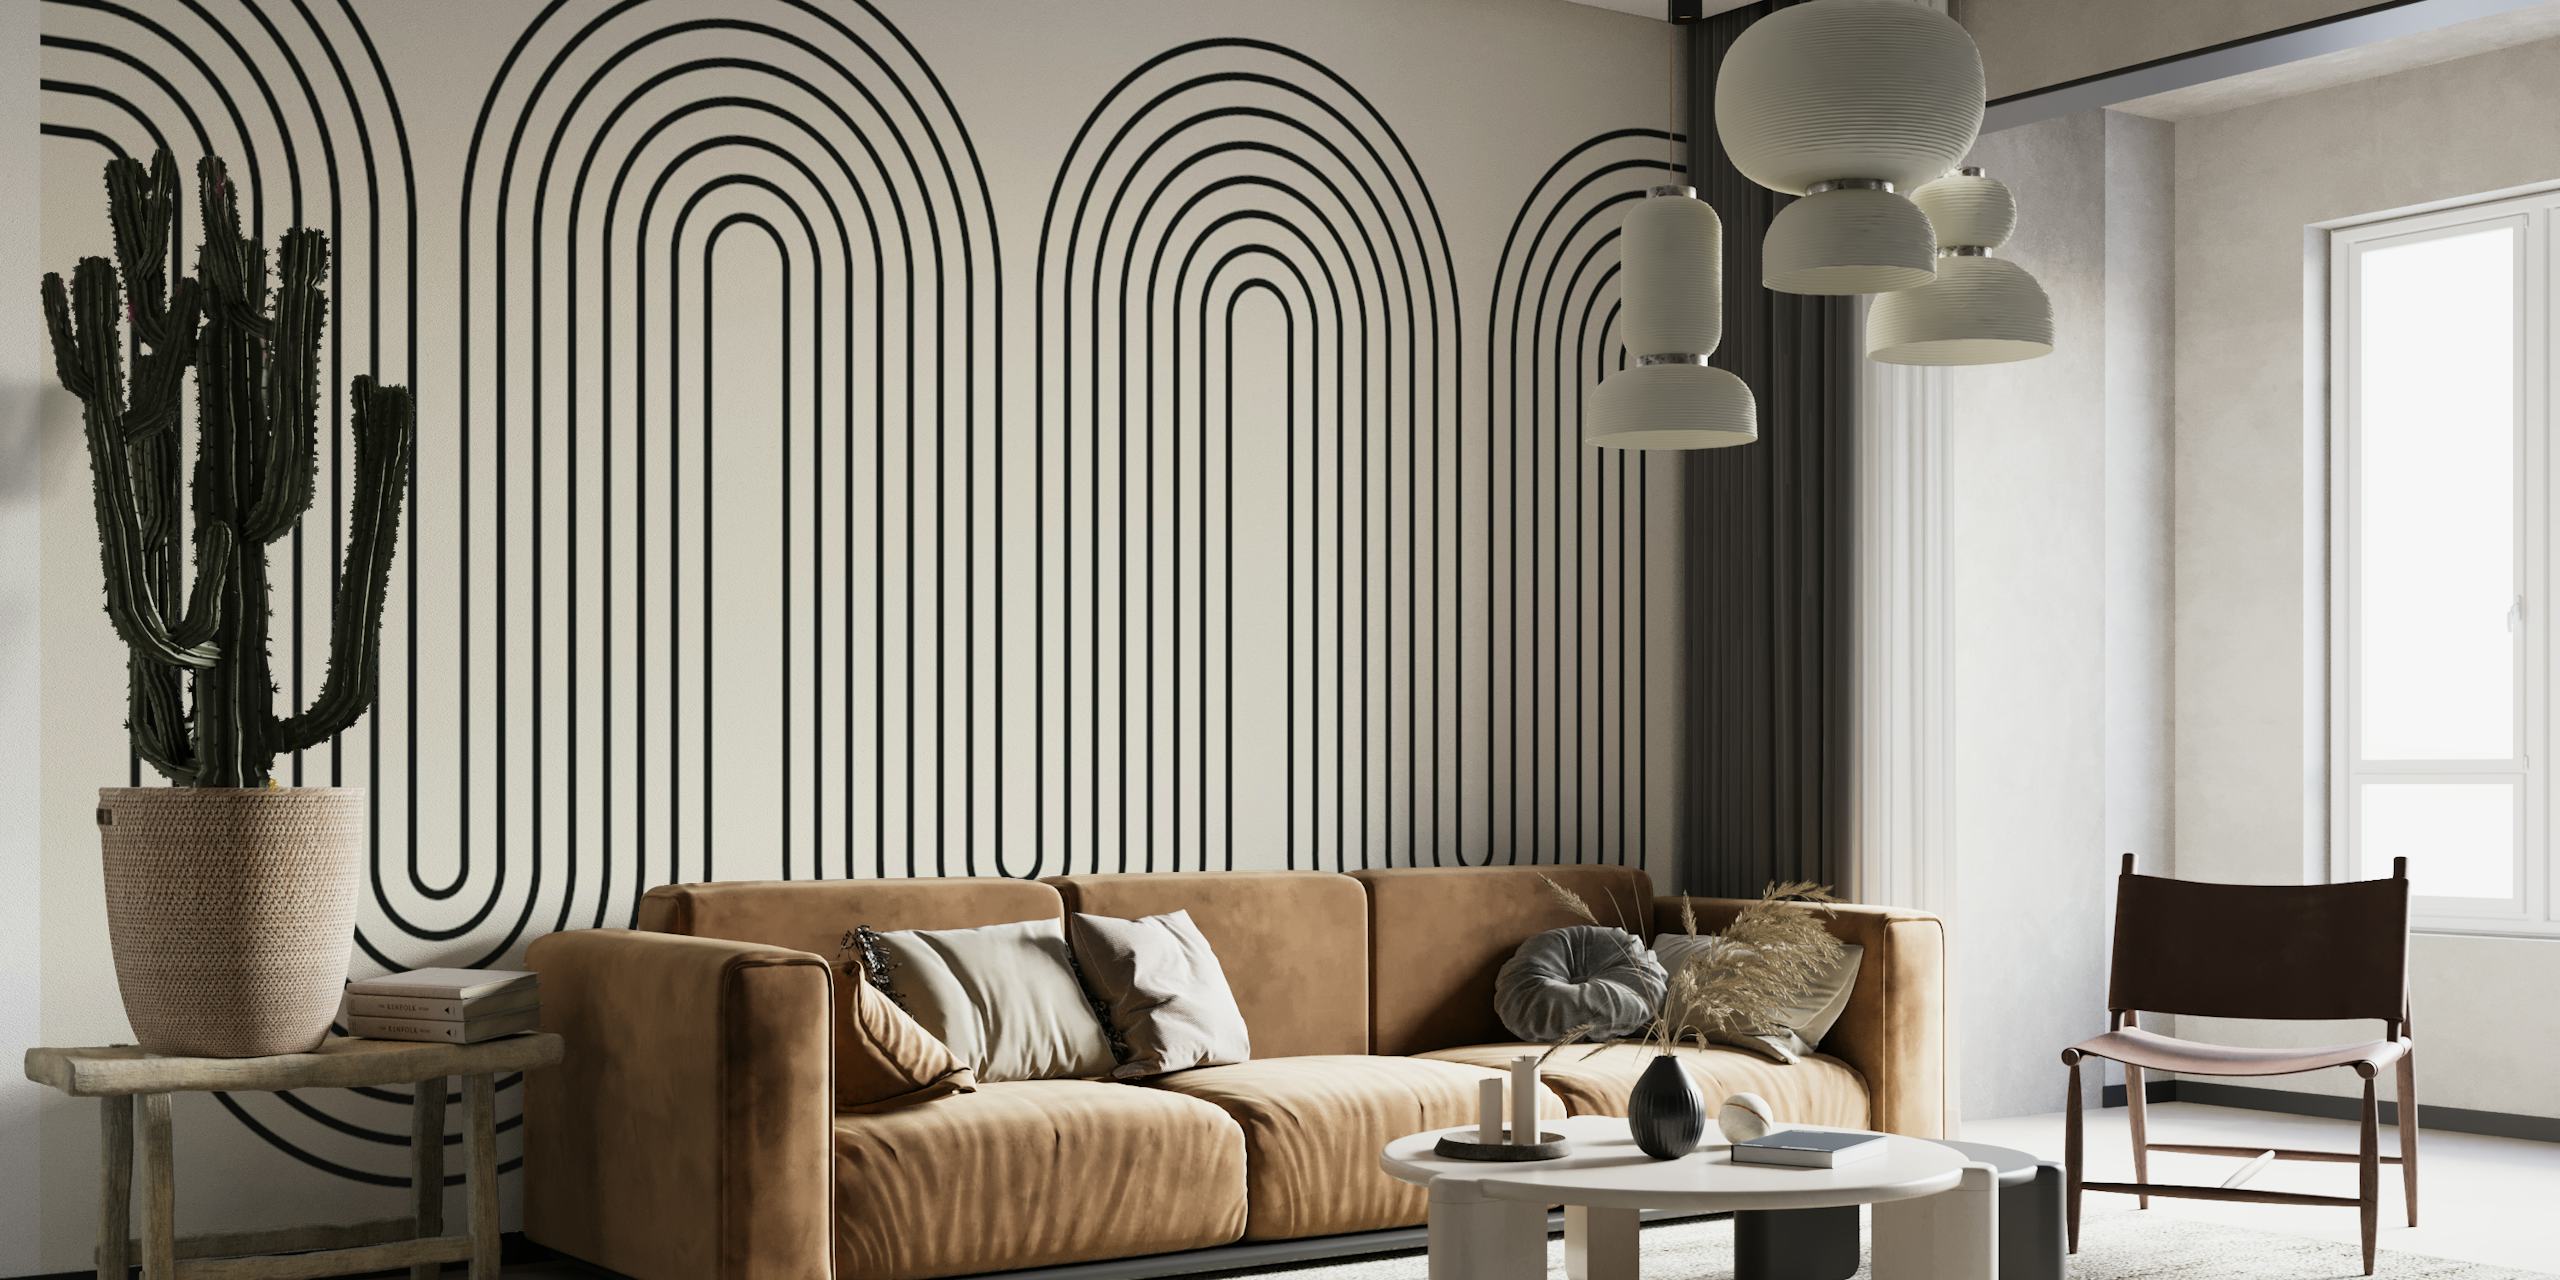 Fotomural vinílico de parede moderno e minimalista com linhas onduladas em tons de cinza